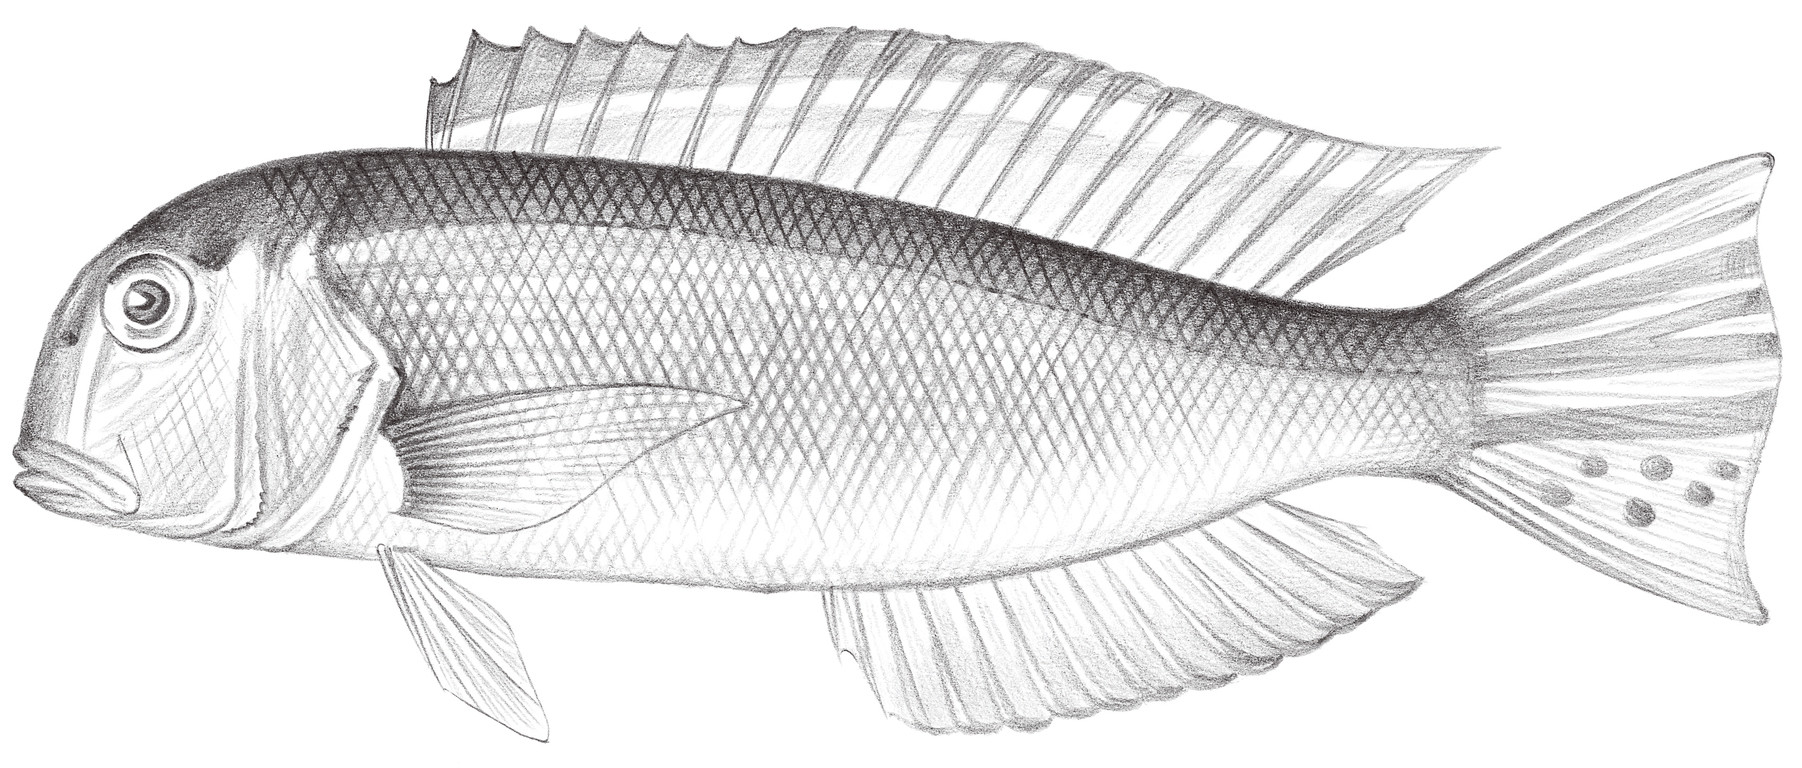 1223.	斑鰭馬頭魚 Branchiostegus auratus (Kishinouye, 1907)